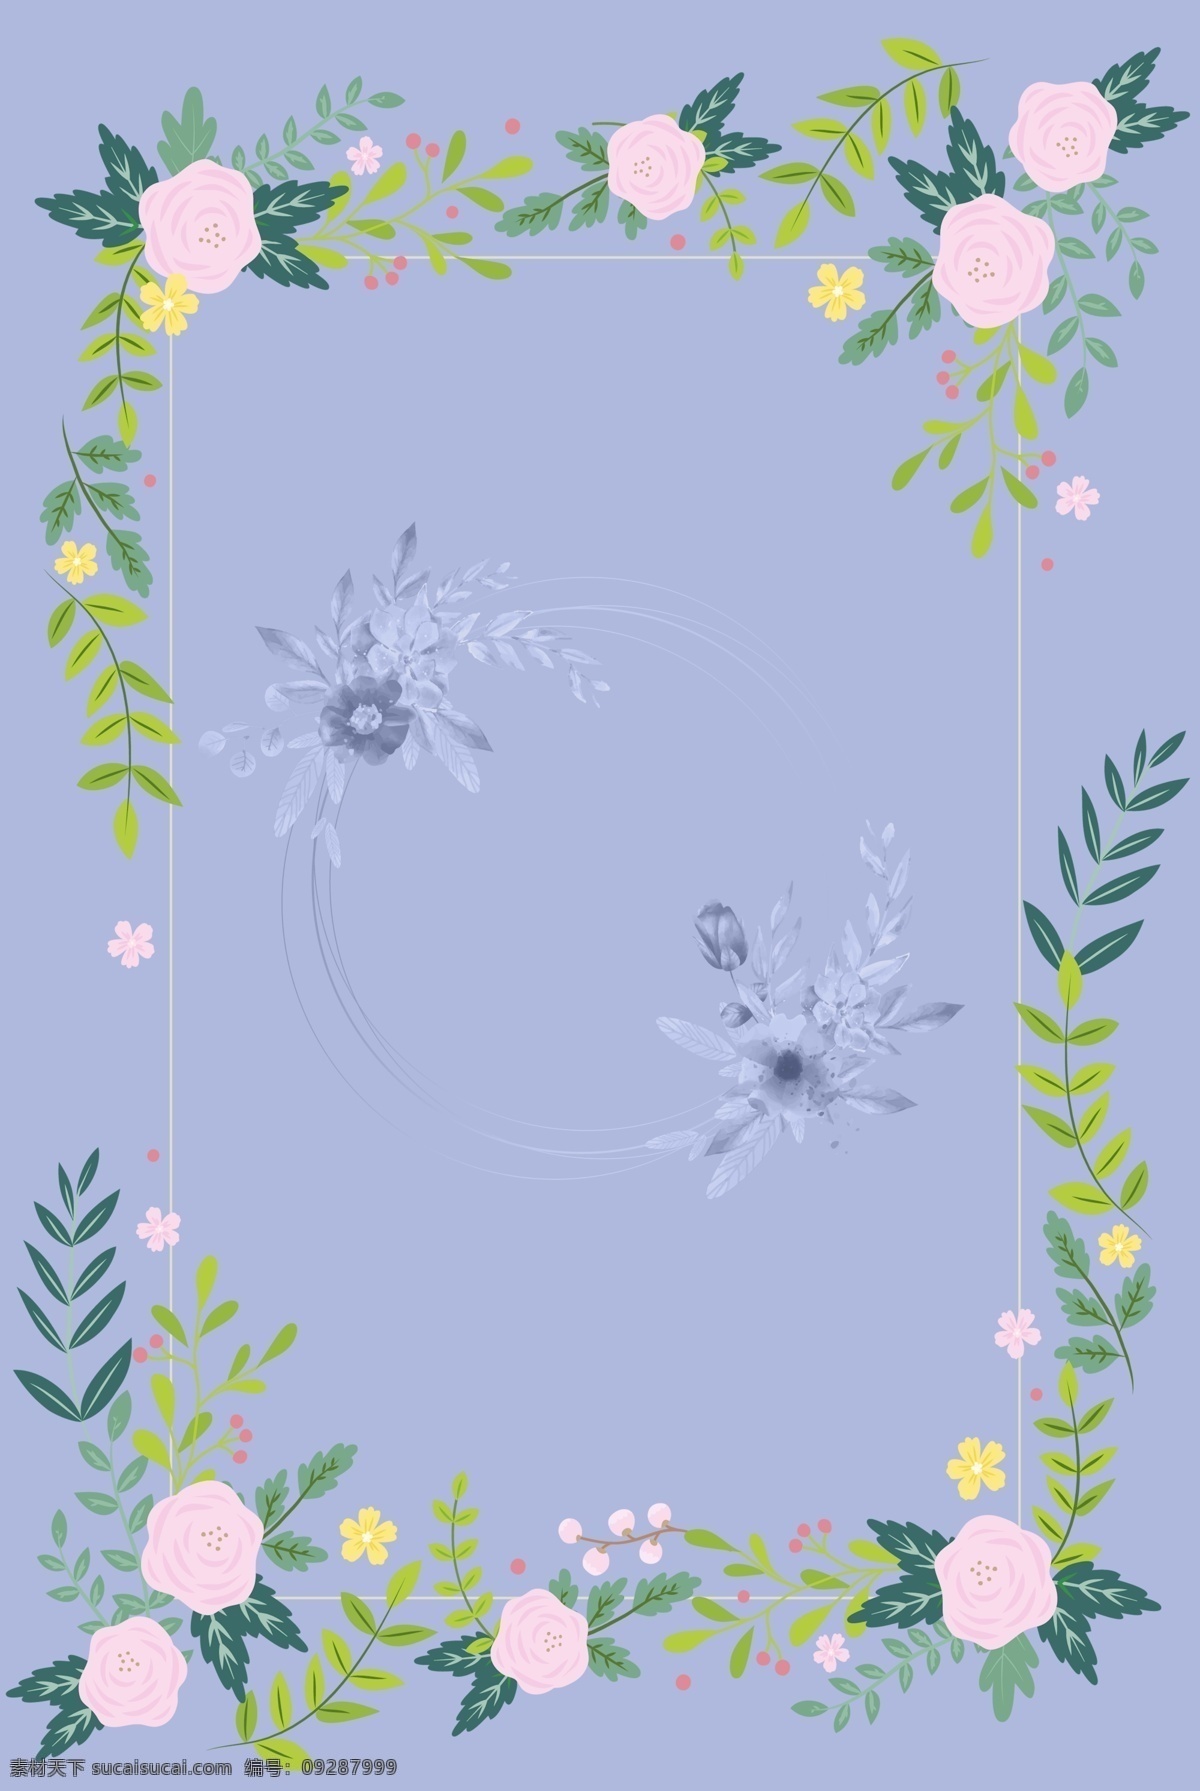 紫色 花朵 淡雅 装饰 背景 婚礼 邀请函 创意 植物 艺术 叶子 边框